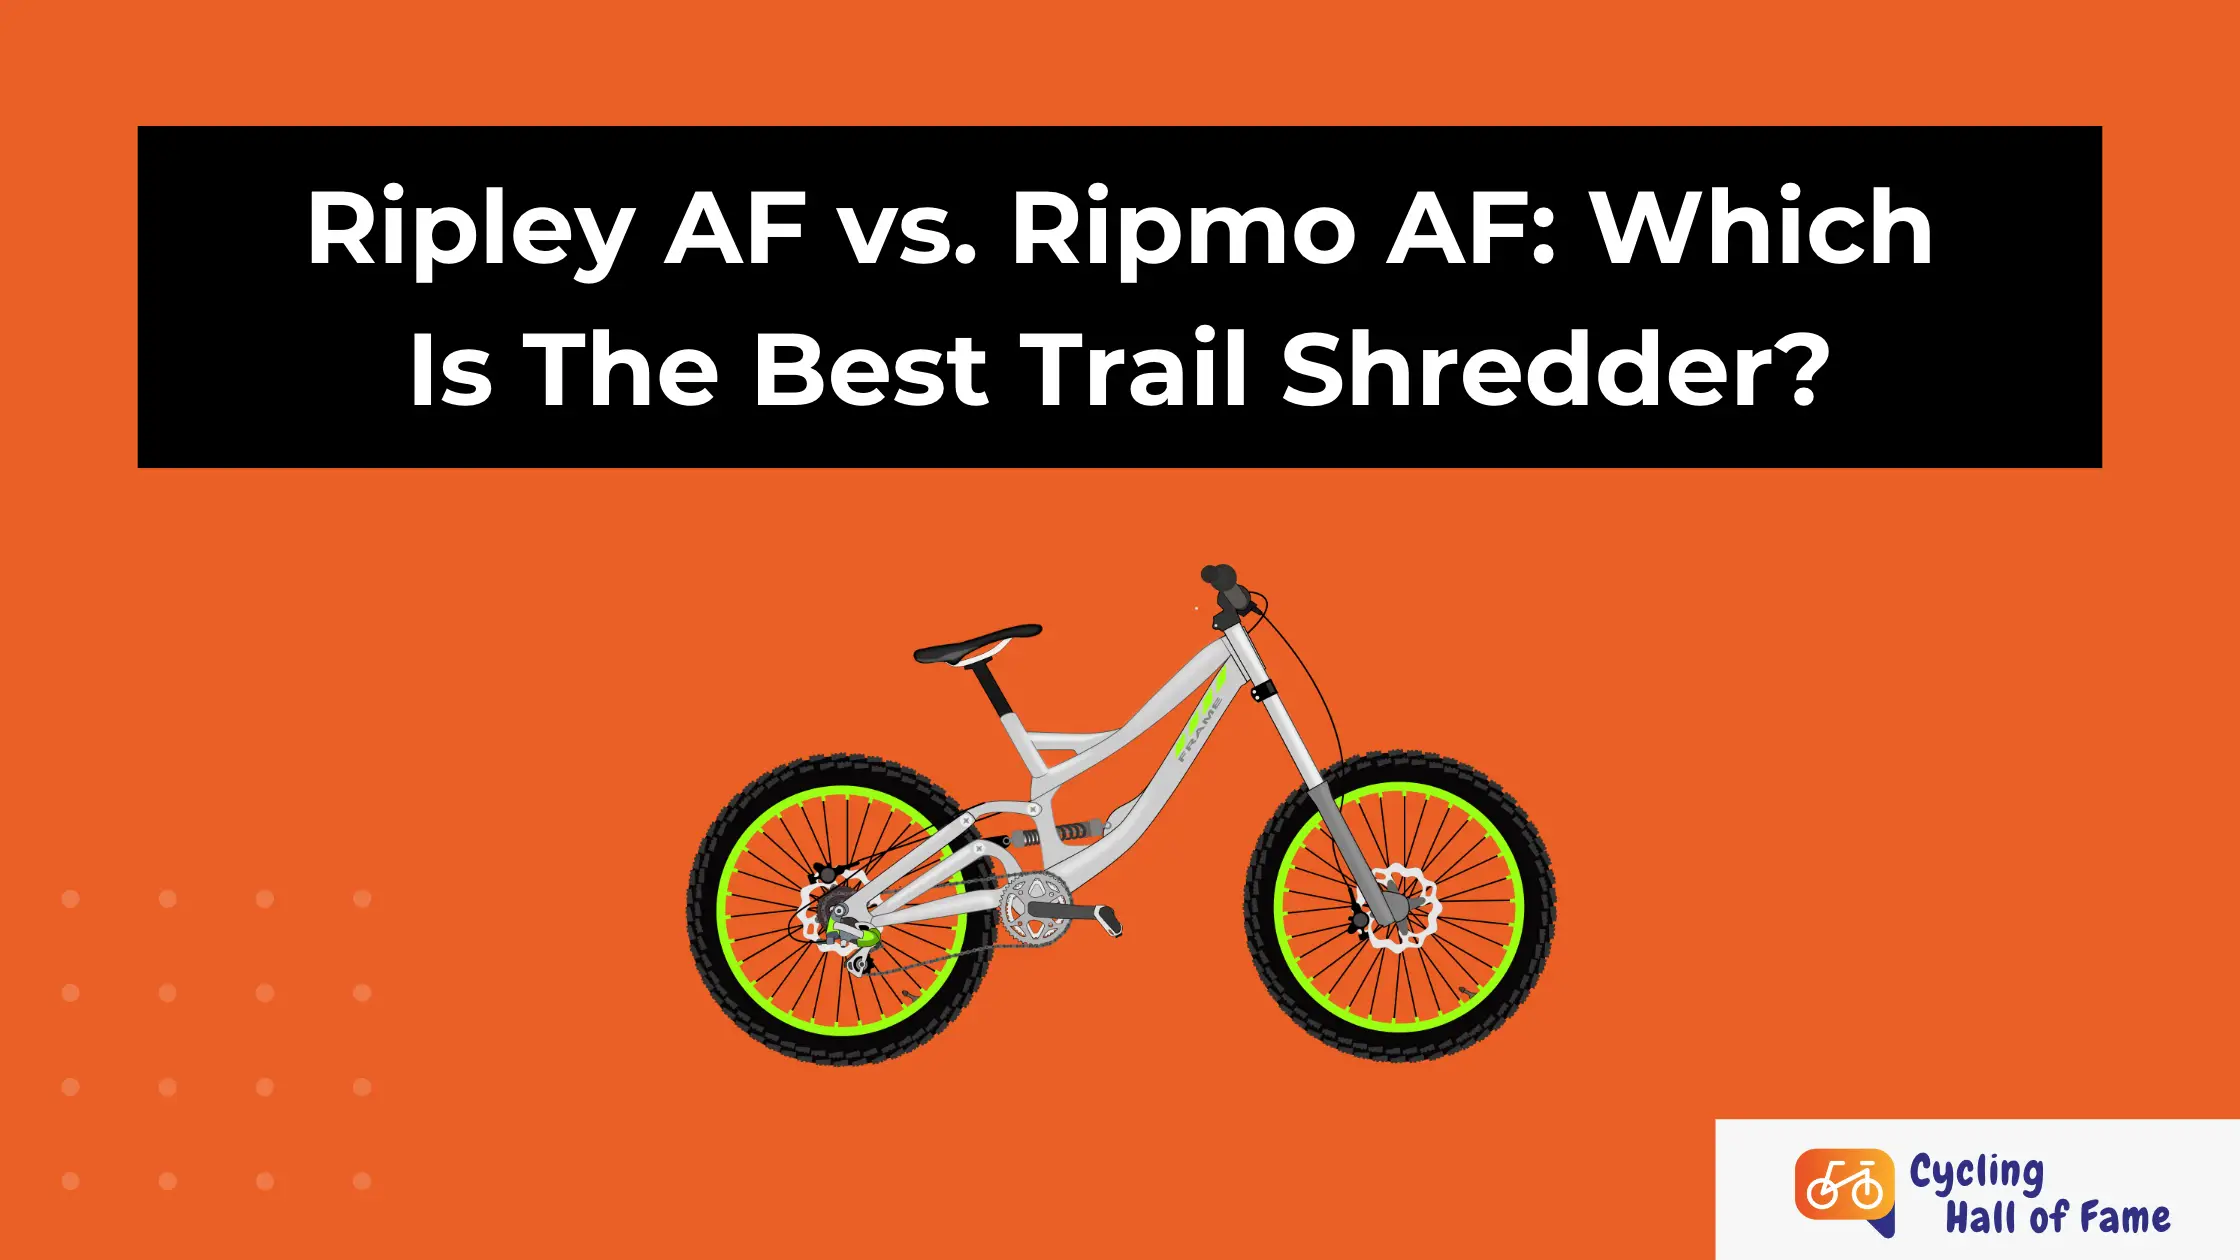 Ripley AF vs. Ripmo AF: Which Is The Best Trail Shredder?